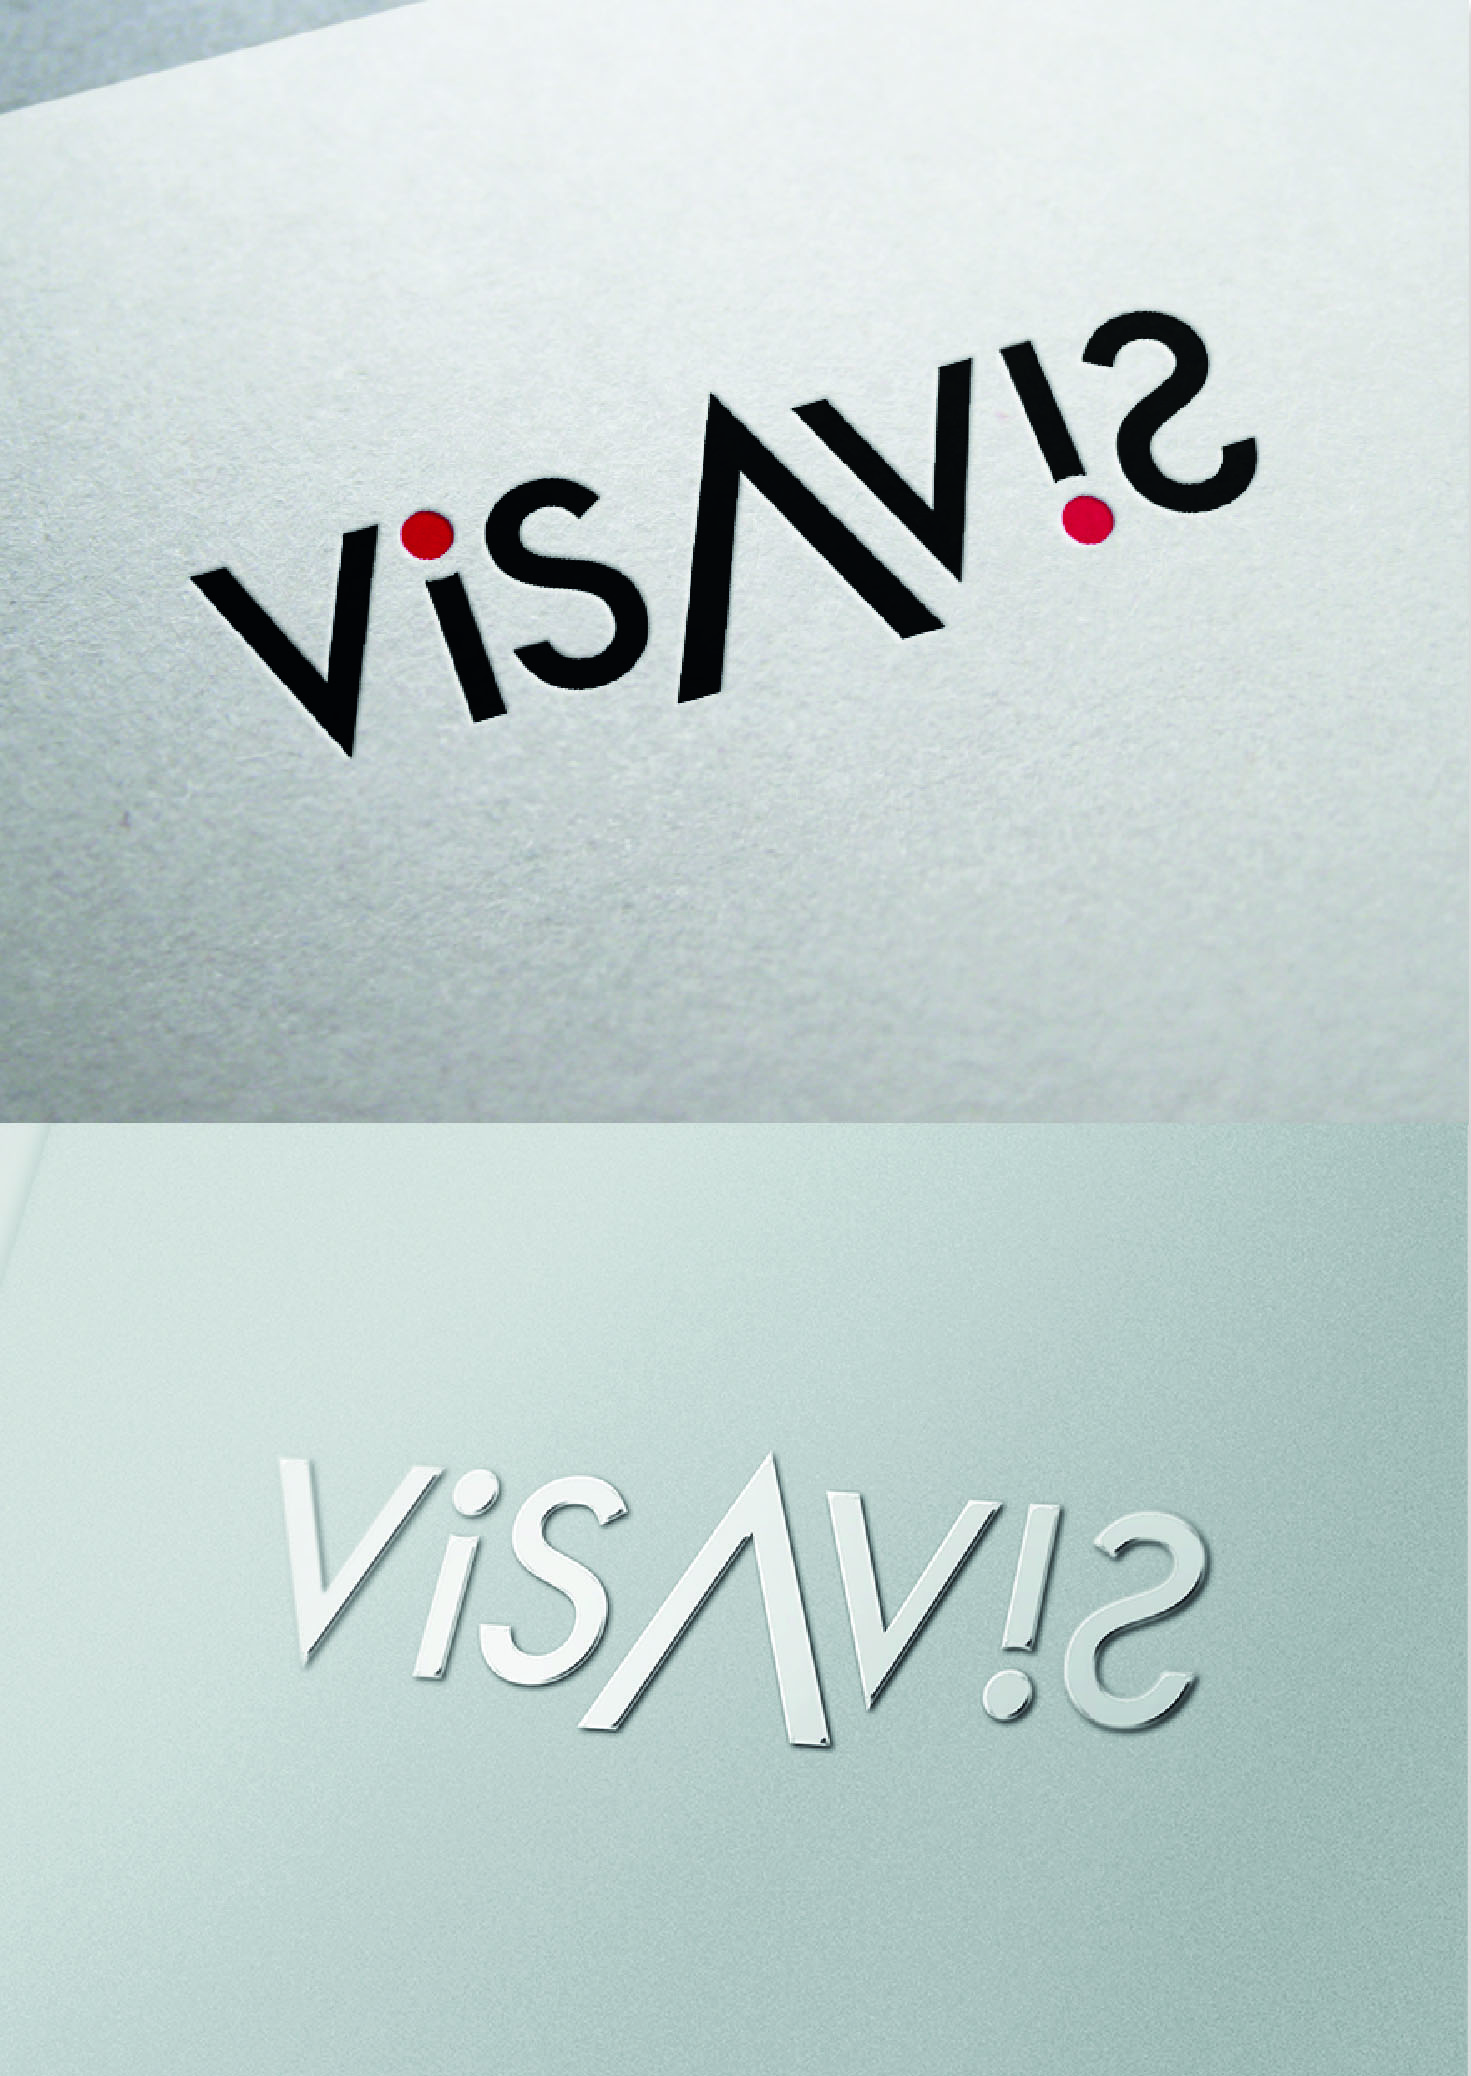 Cration de logo - VISAVIS - Vins et spiritueux